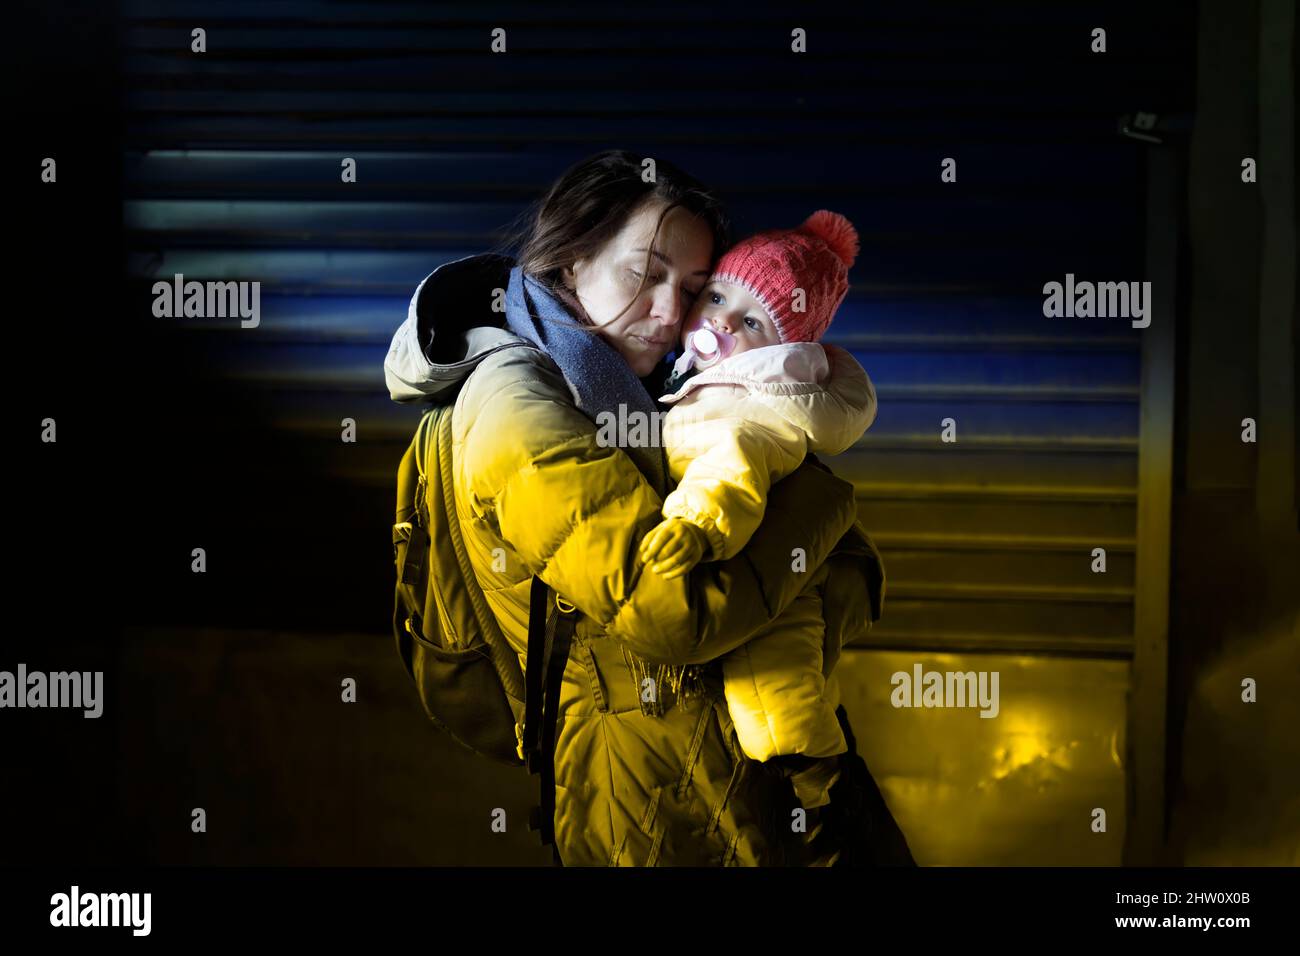 Une mère attentionnée embrasse son petit enfant dans un abri souterrain Banque D'Images